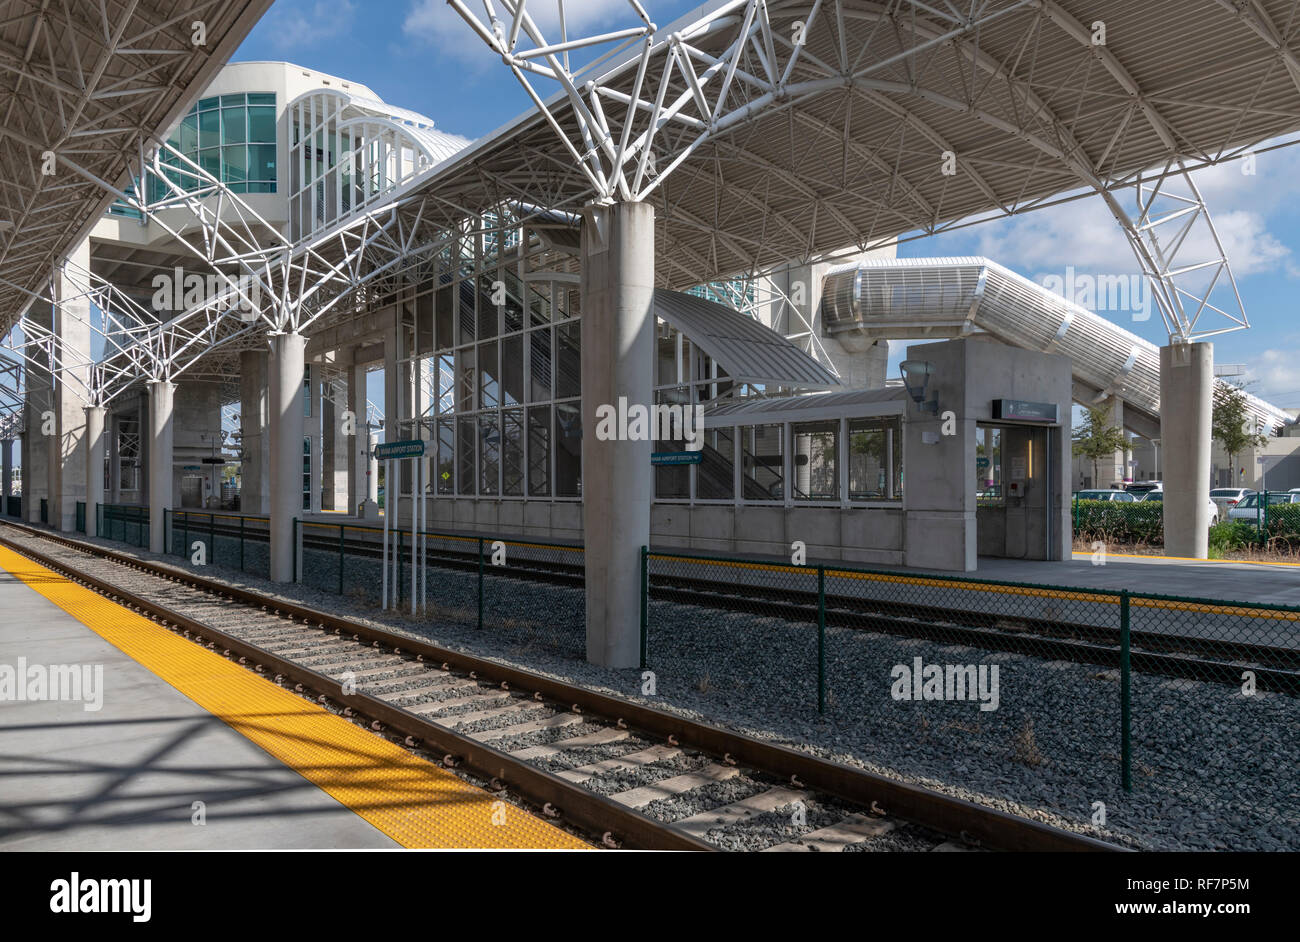 La nuova stazione Tri-Rail e treni all'Aeroporto di Miami. Il percorso ferroviario conduce i passeggeri a nord di Fort Lauderdale e oltre a Mangolia Park Station. Foto Stock